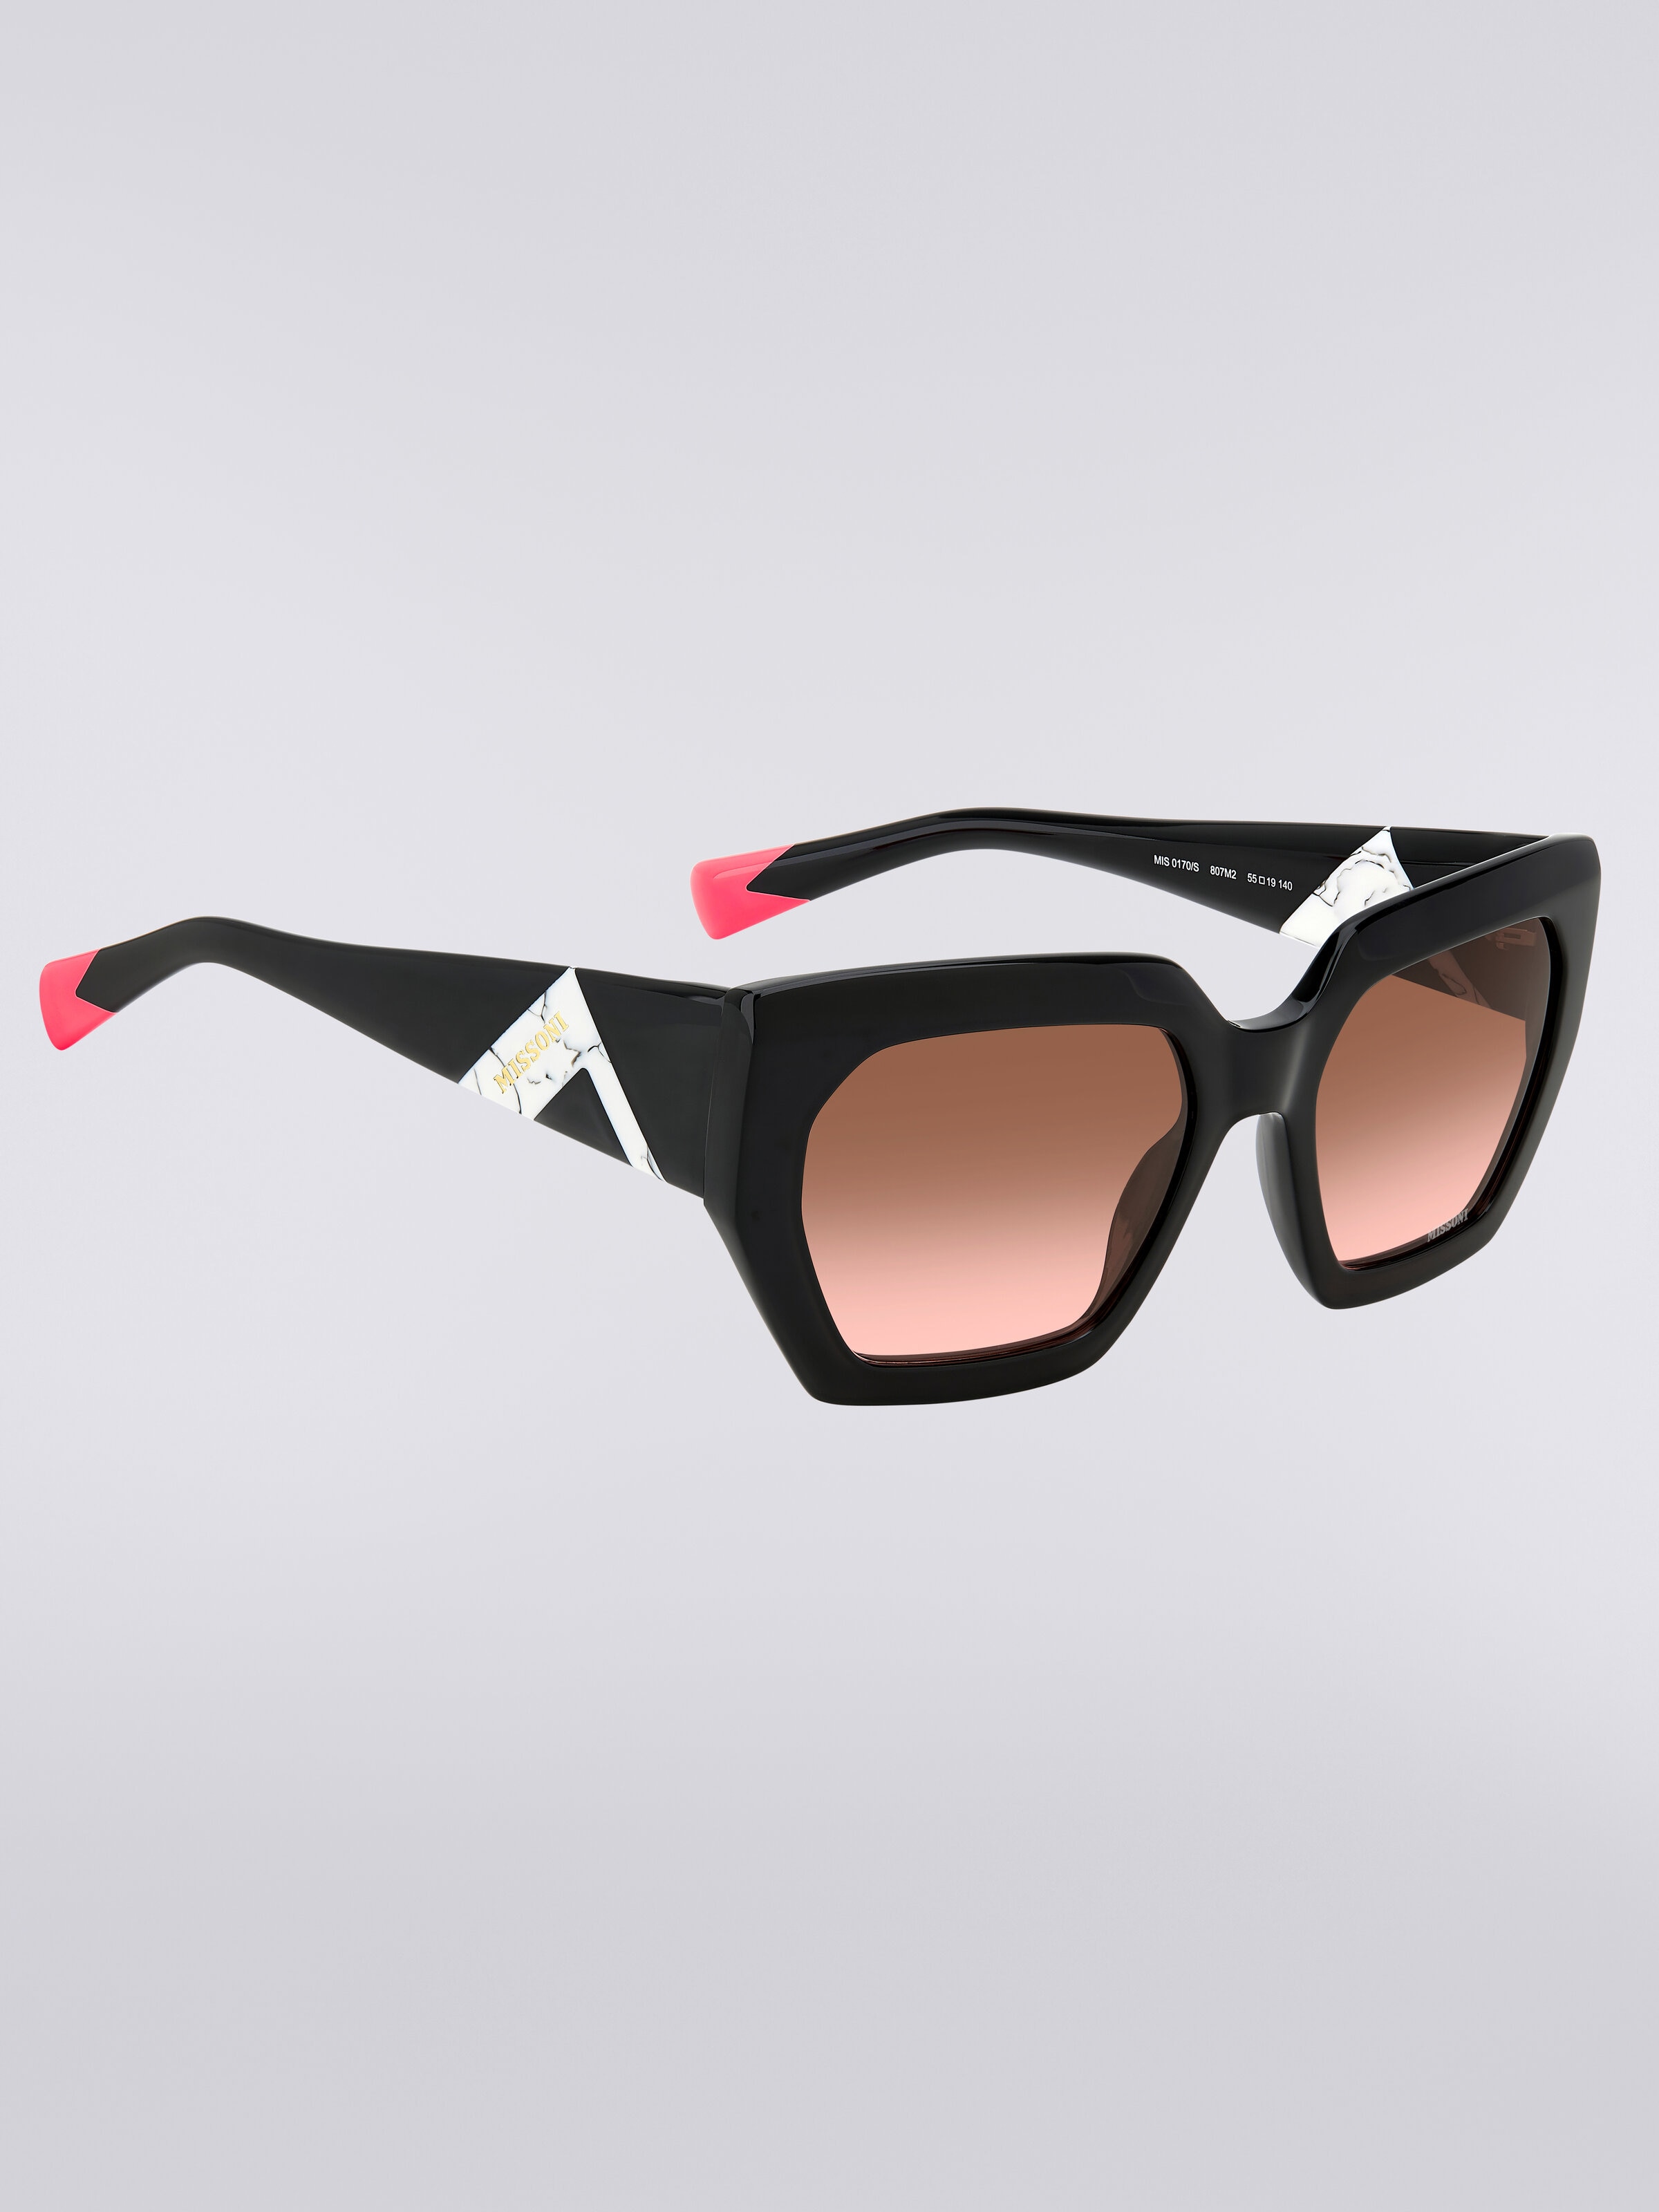 Sonnenbrille mit quadratischer Fassung, kontrastierendem Einsatz und Logo, Mehrfarbig  - 2